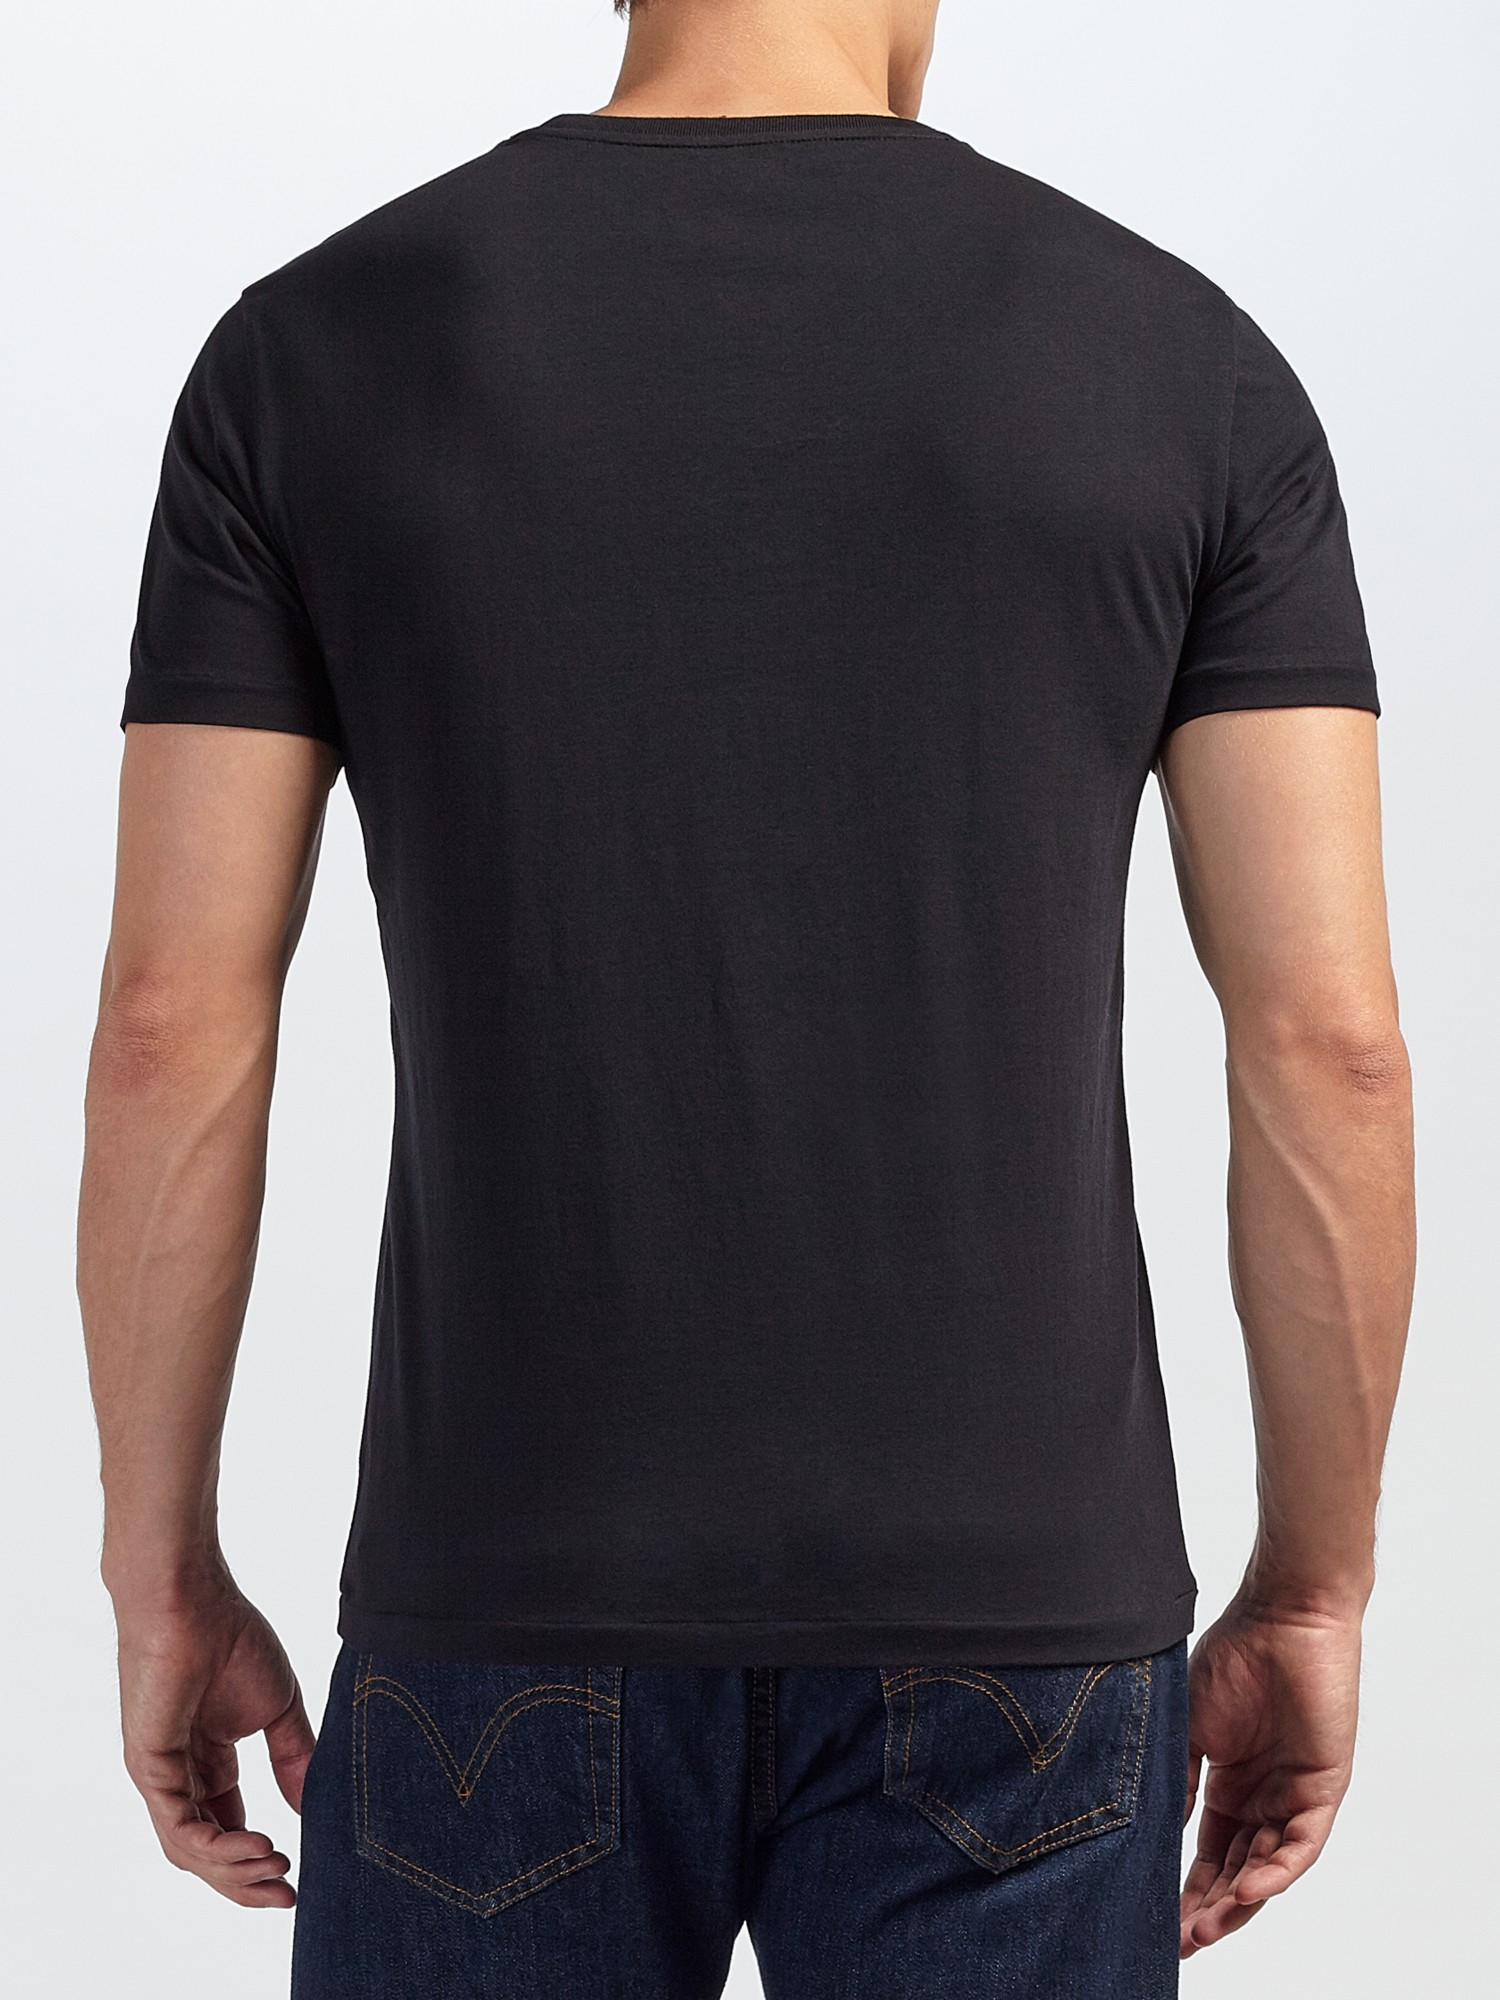 Polo Ralph Lauren Cotton Basic Custom Fit T-shirt in Black for Men - Lyst